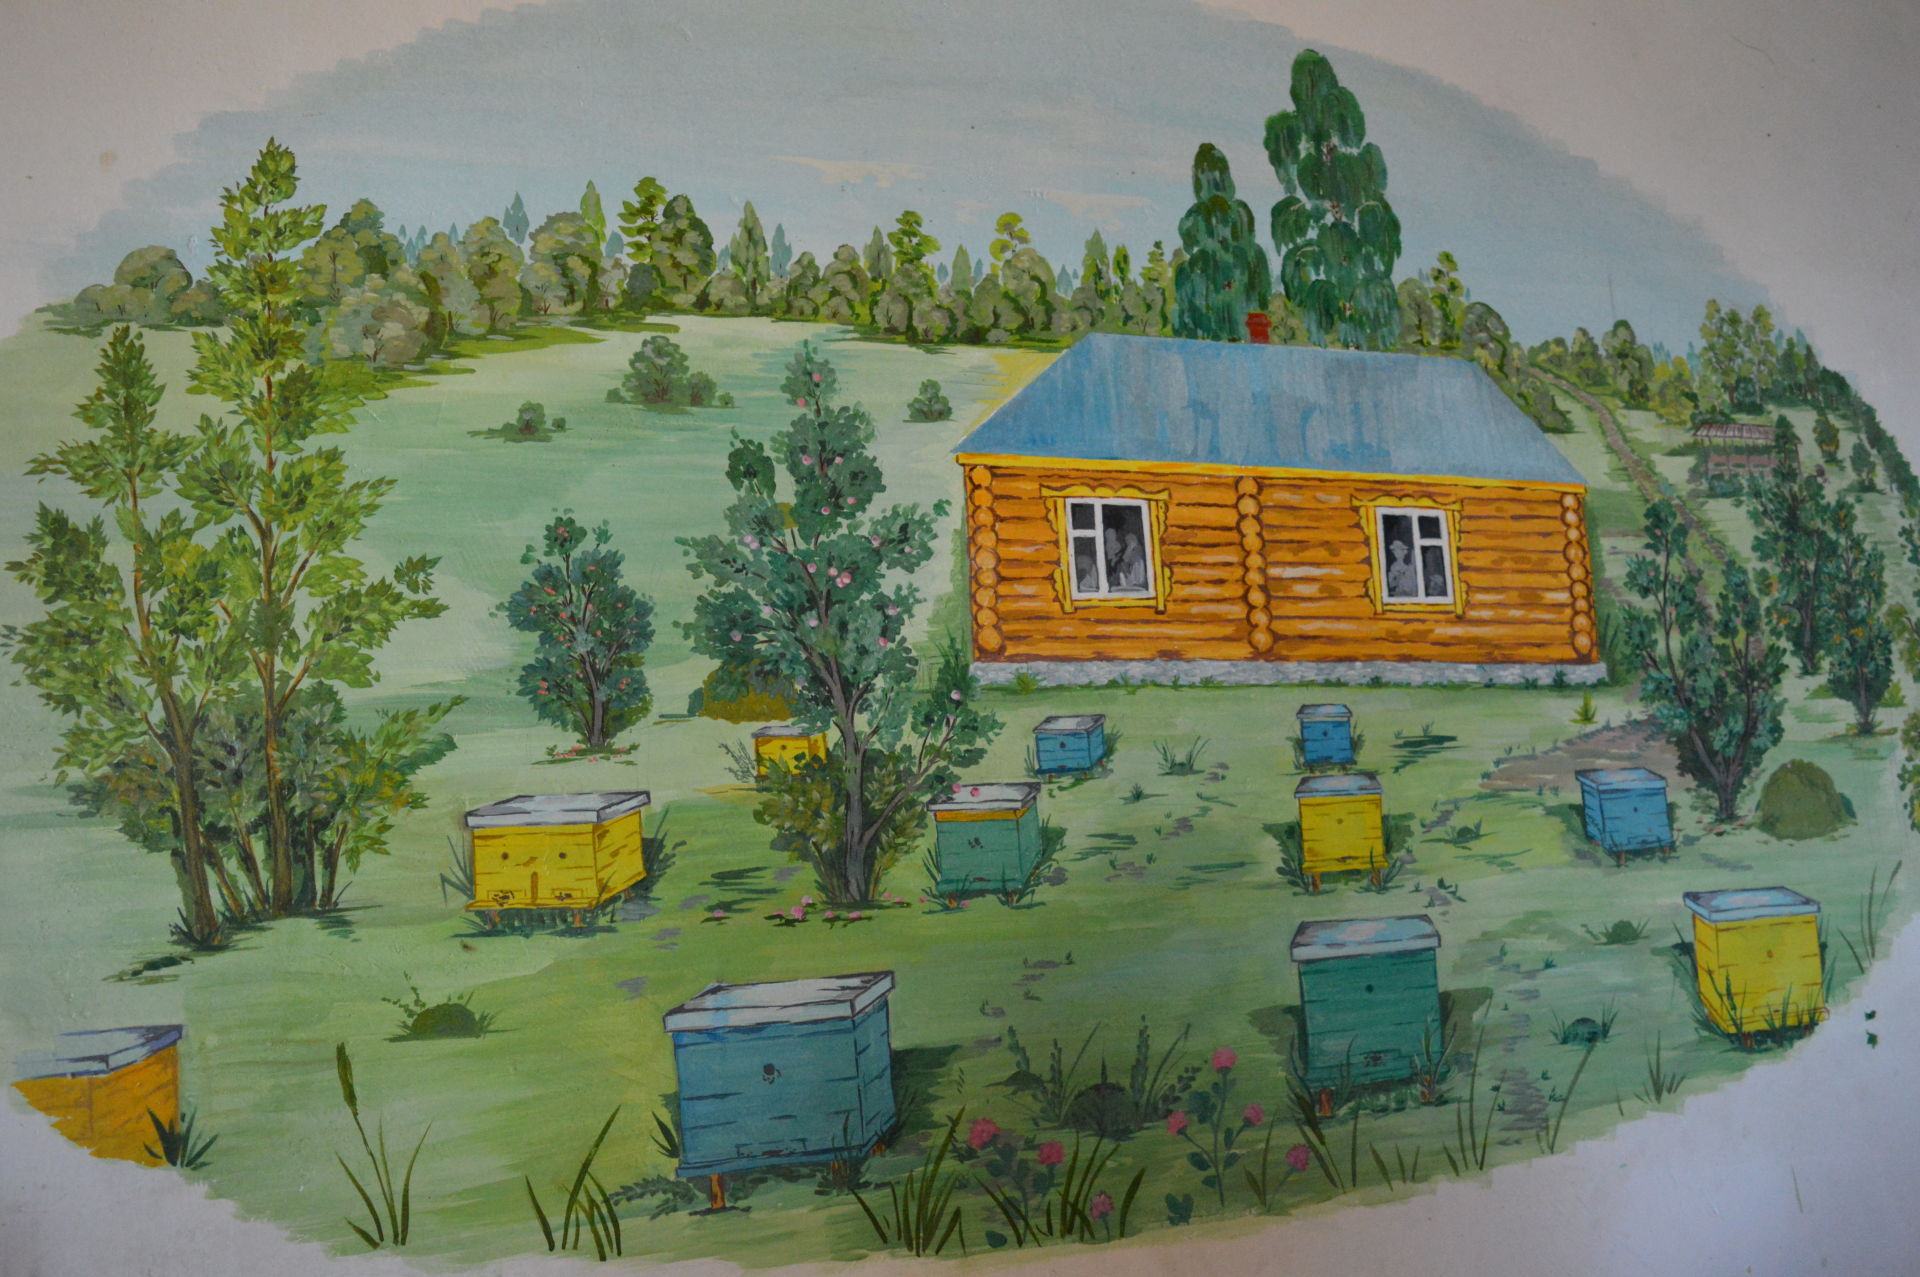 Пчеловод из Камско-Устьинского района построил апидомик для оздоровления